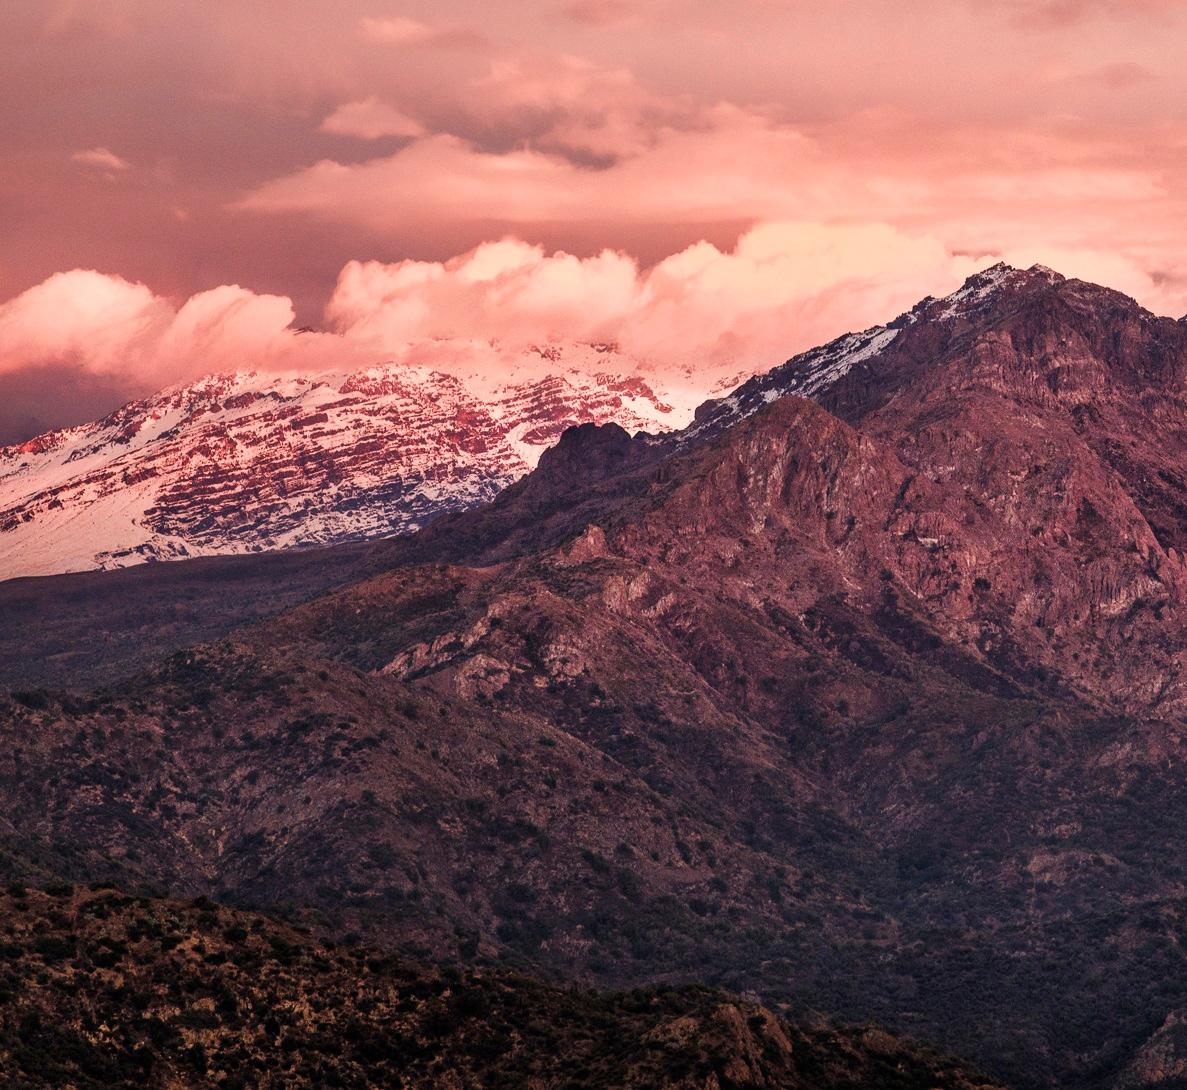 Cordillera I Cauquenes. Landscape Pigment Prints. From the Series Cordillera - Naturalistic Photograph by Miguel Winograd 